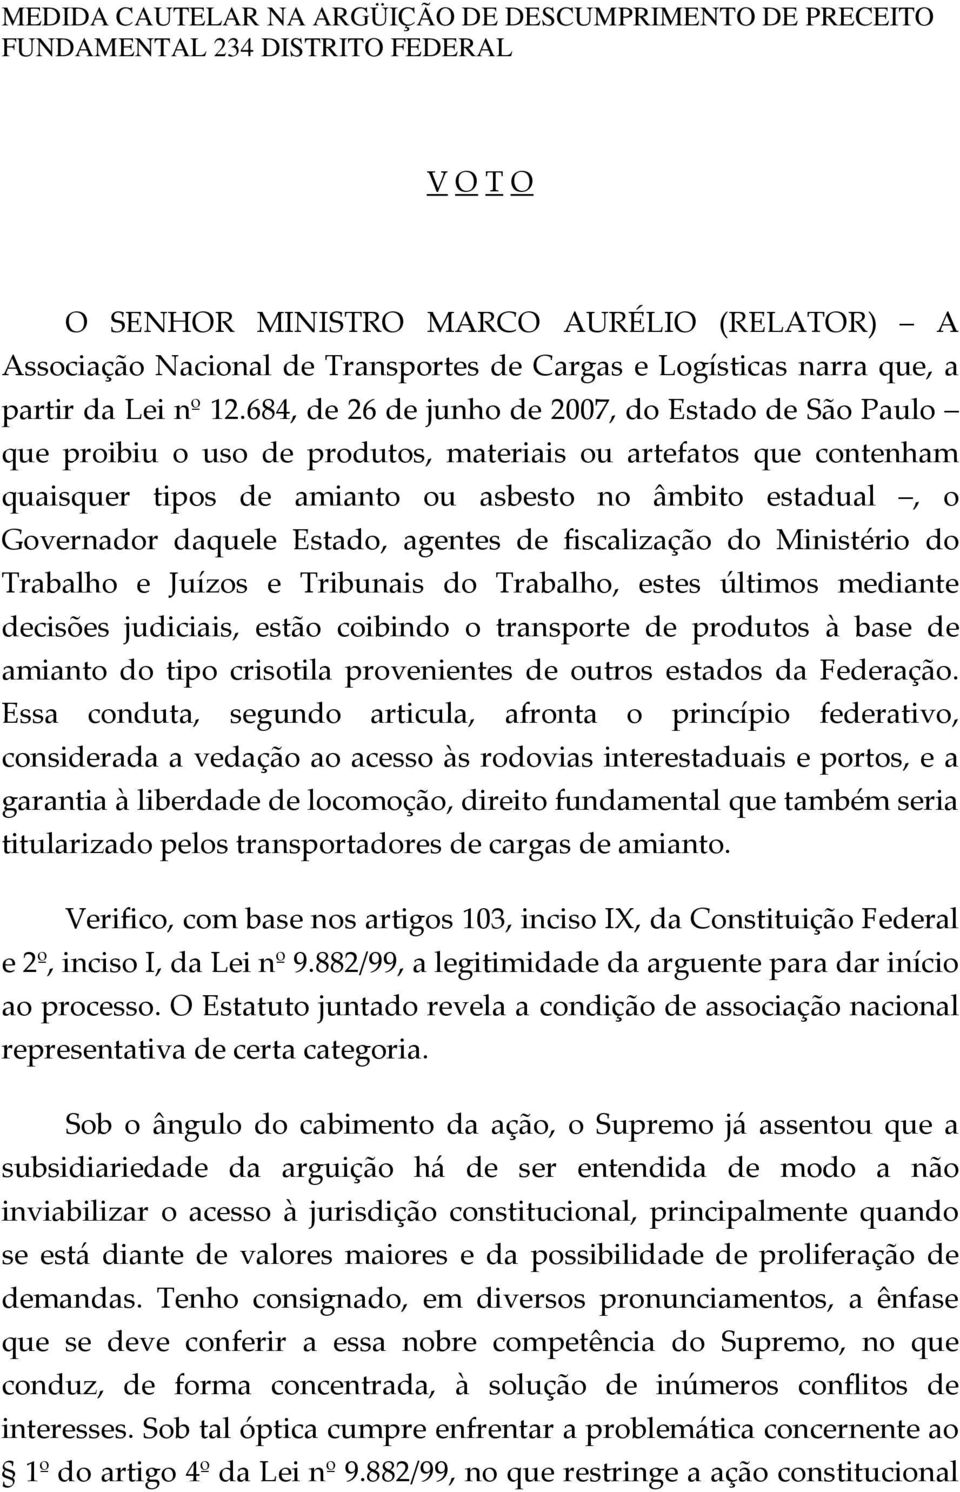 684, de 26 de junho de 2007, do Estado de São Paulo que proibiu o uso de produtos, materiais ou artefatos que contenham quaisquer tipos de amianto ou asbesto no âmbito estadual, o Governador daquele